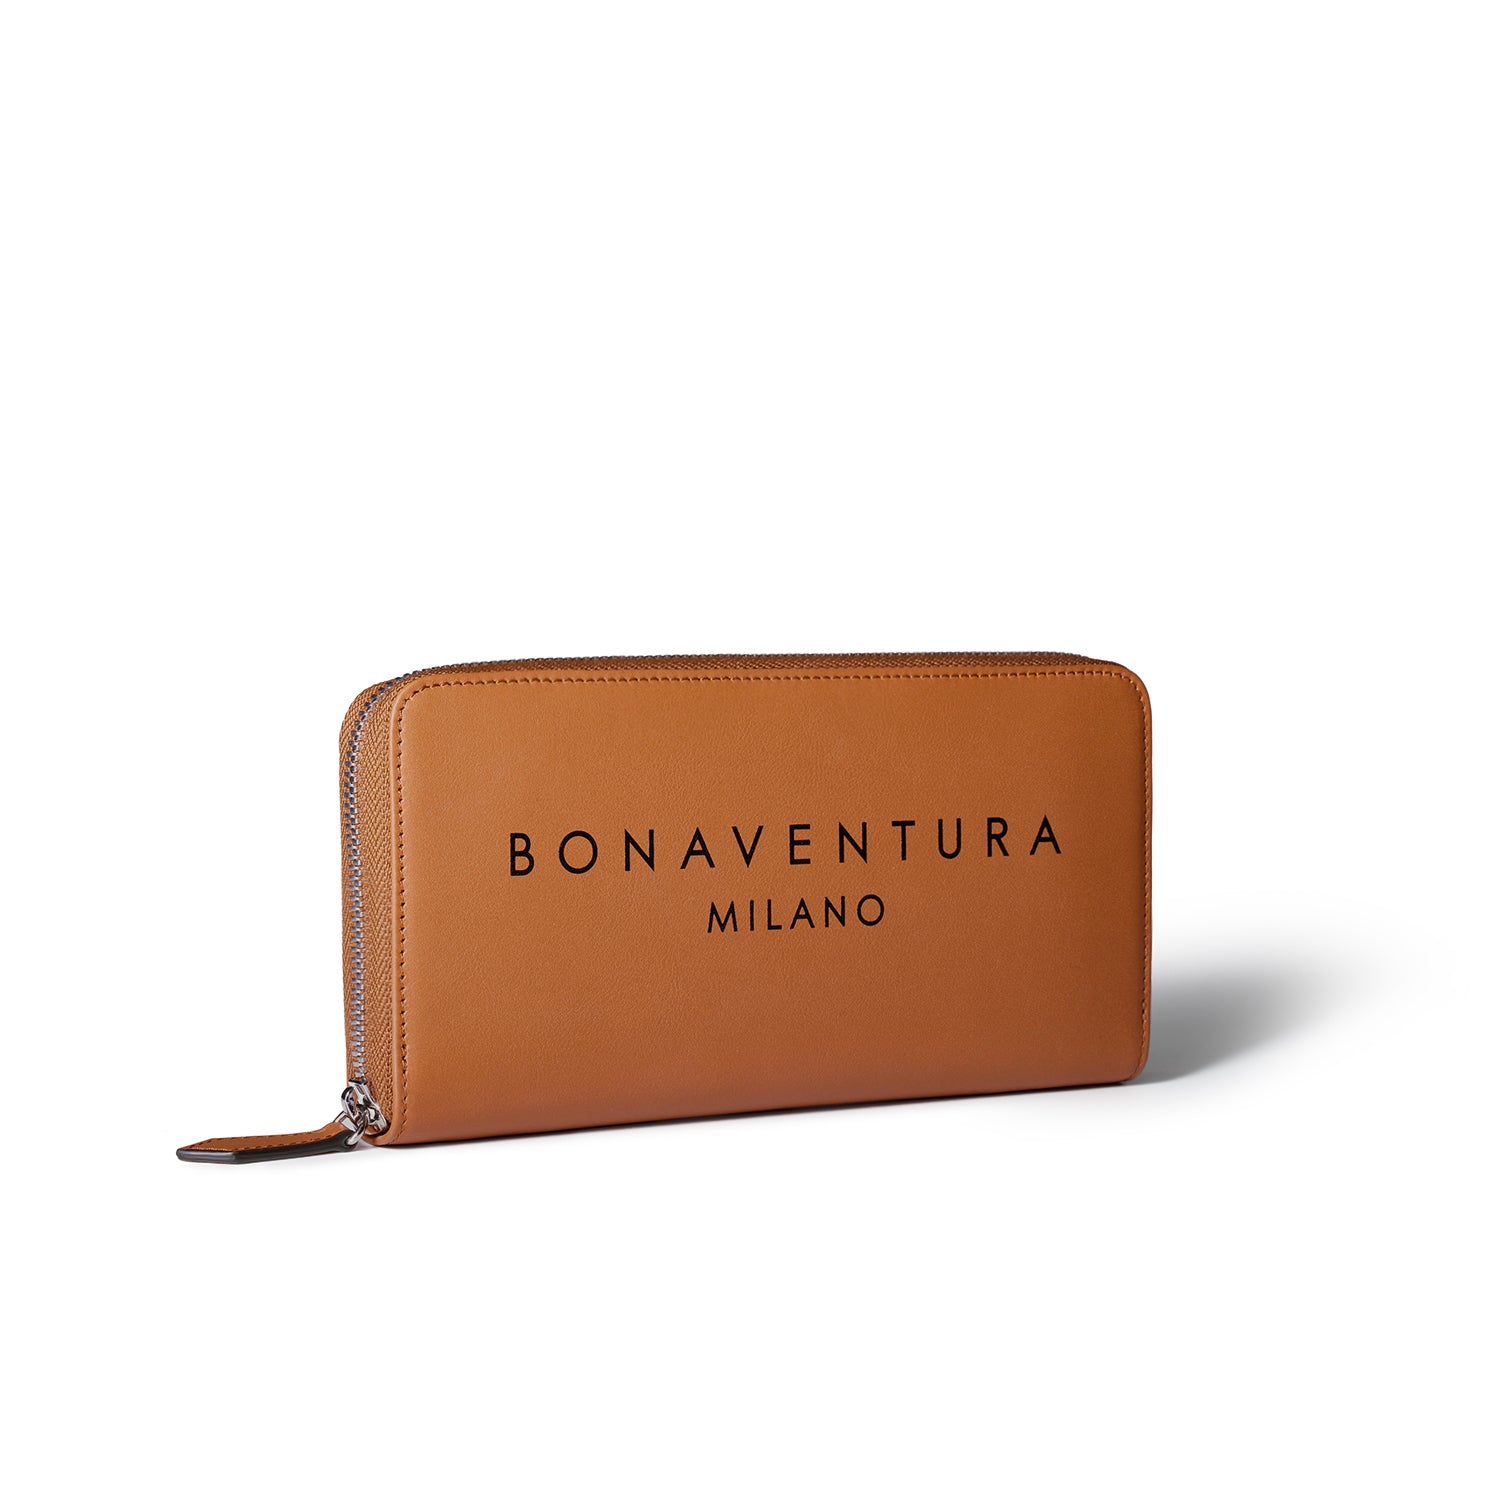 上質なレザーの財布 / カードケース – イタリア(ミラノ)発の高級革製品 